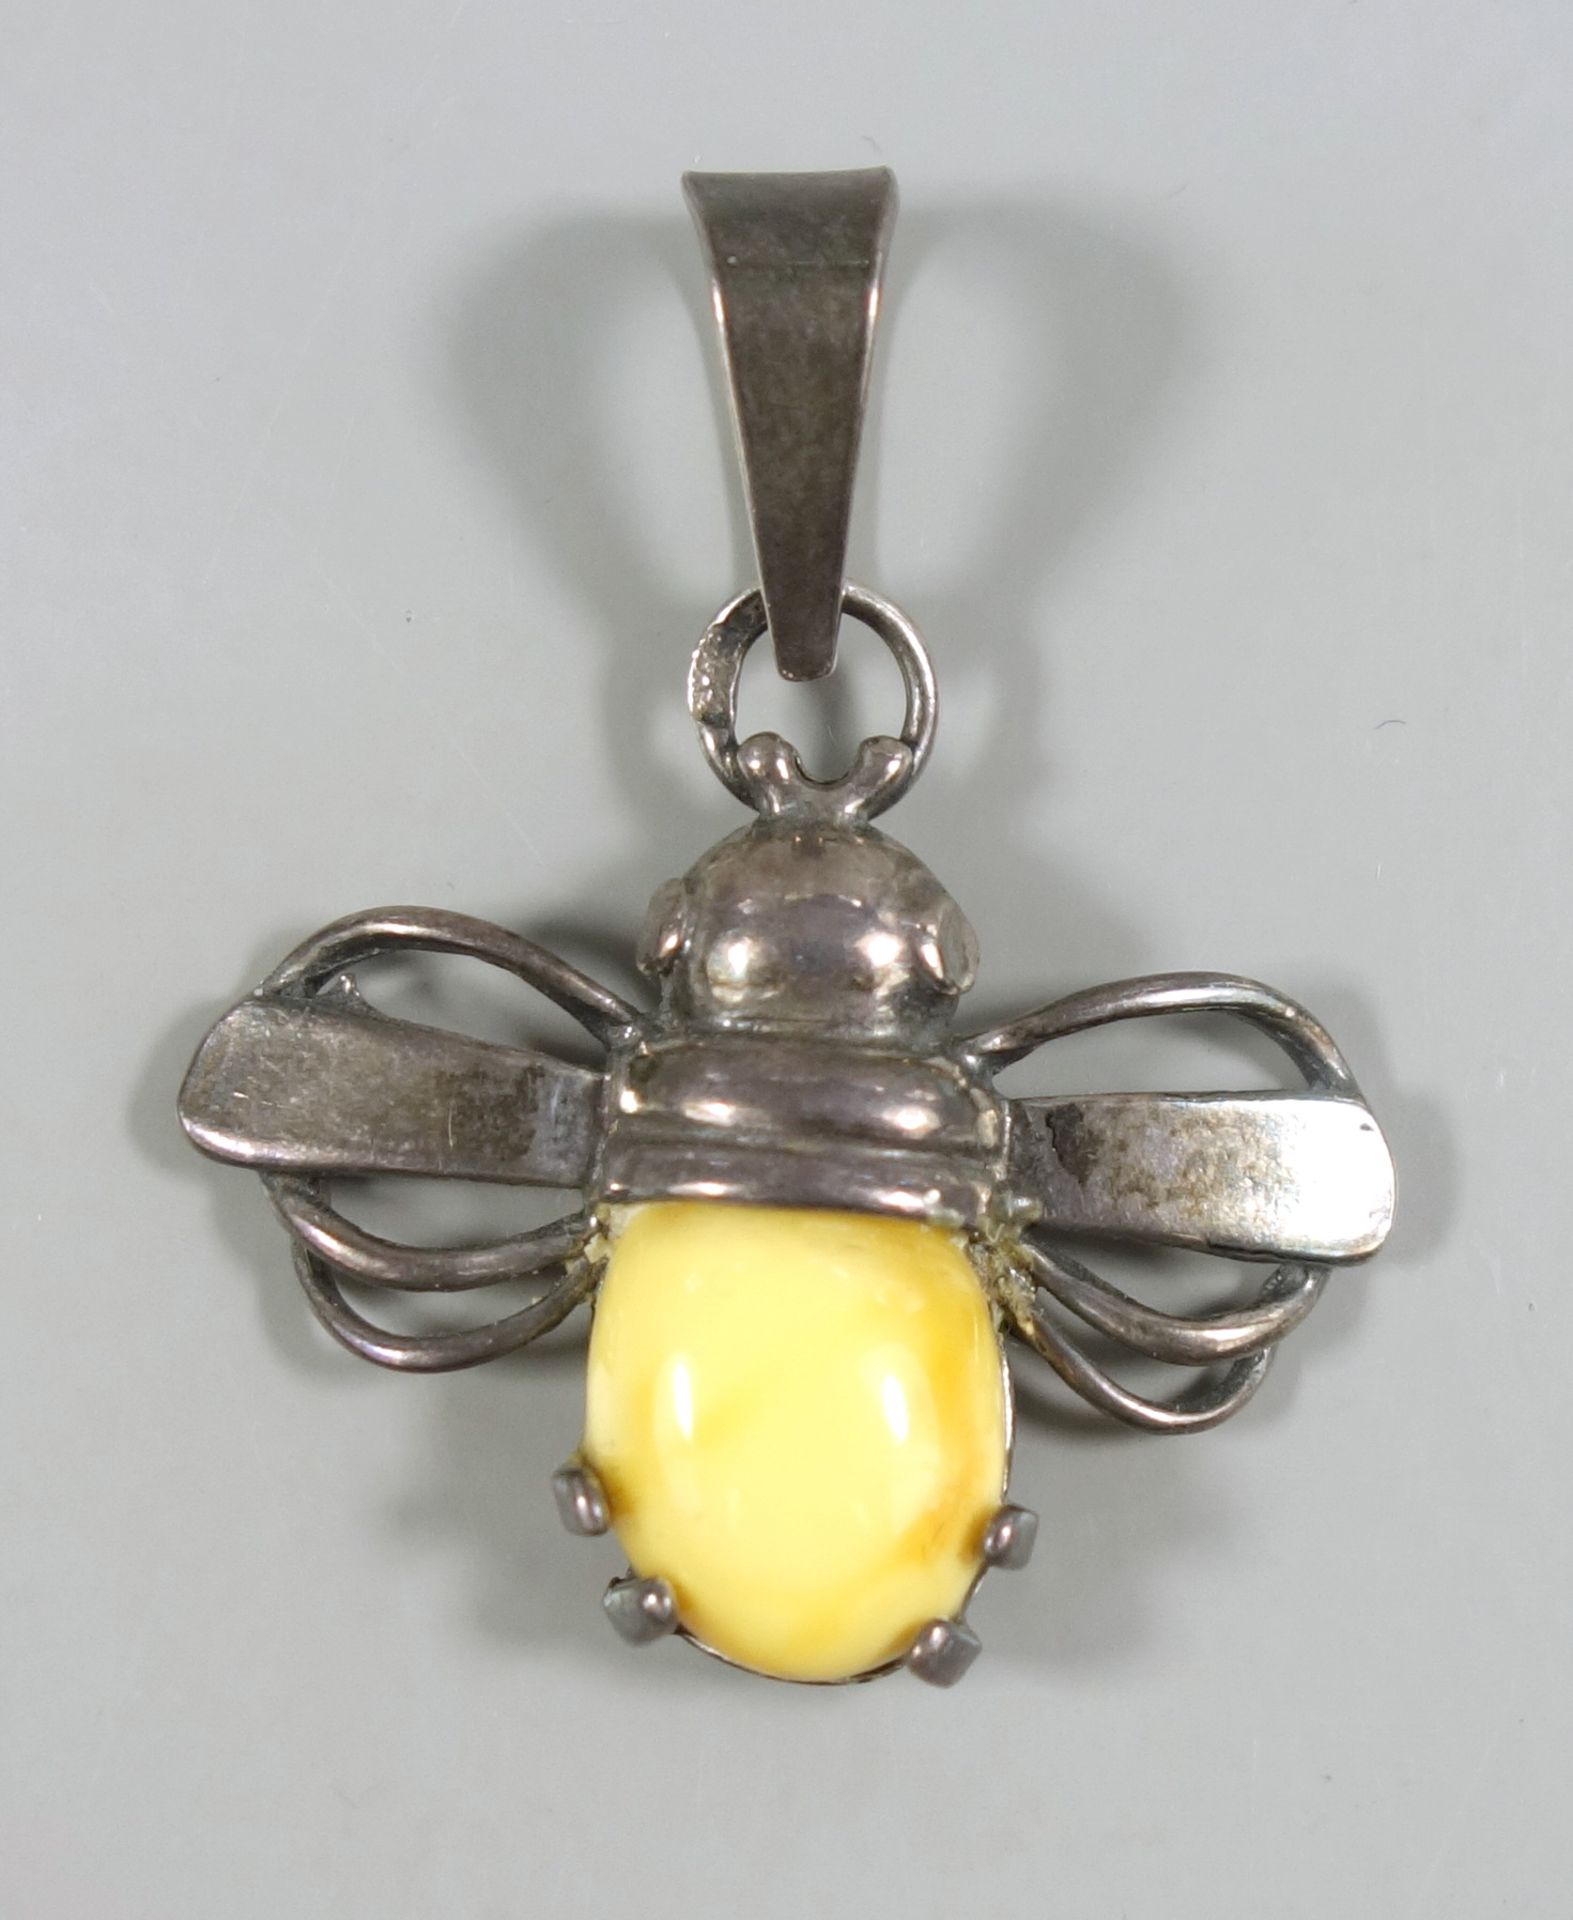 Anhänger "Biene" mit Bernstein-Cabachon, 925er Silber, 1930er Jahre, Gew. 23,97g, L.3,5cmBee pendant